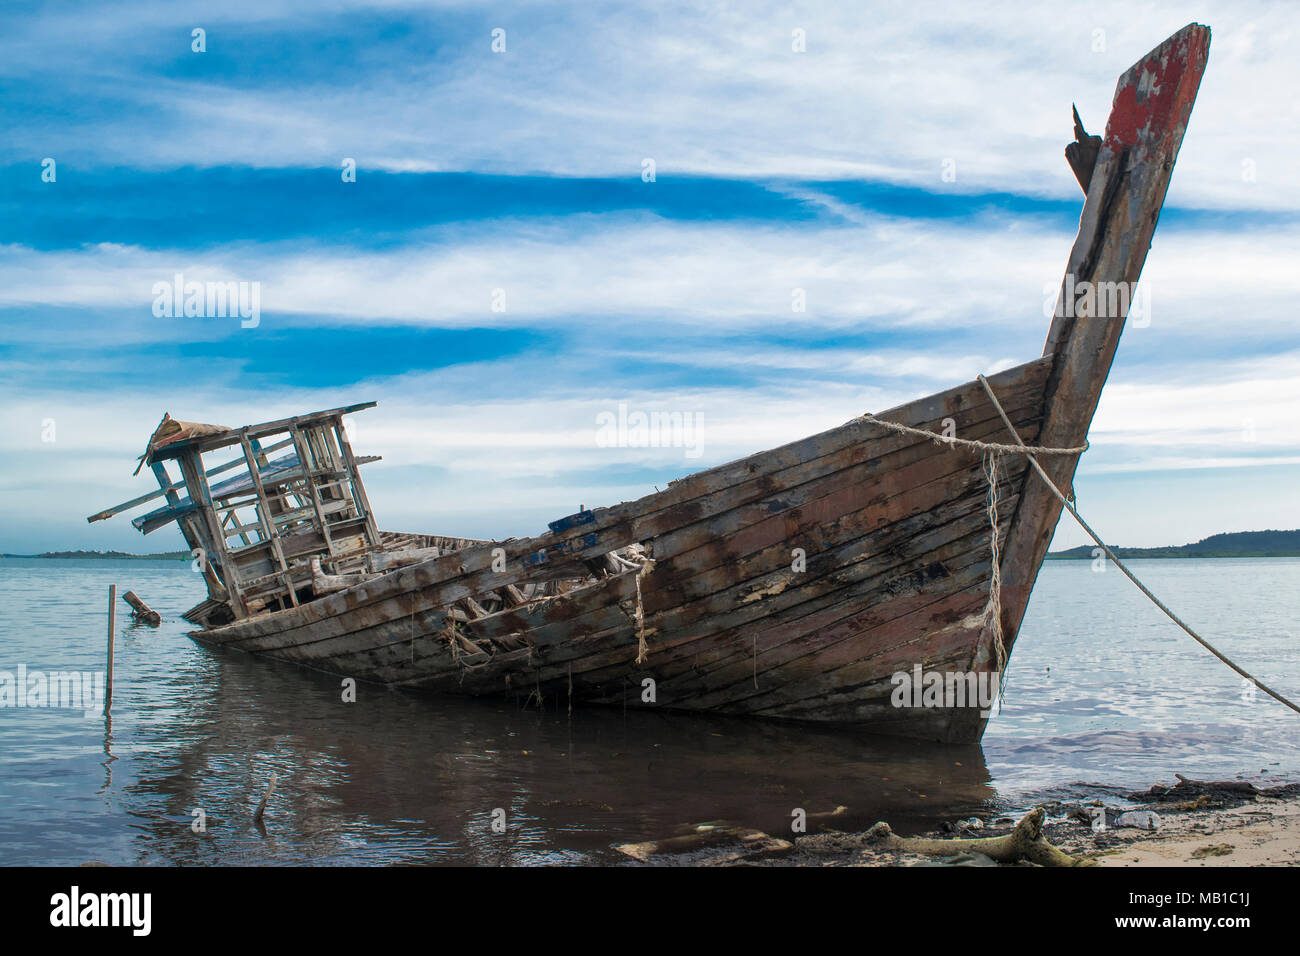 Ein Schiffswrack/Schiffs/Boote aus Holz/abgebrochenen Boote am Strand - Insel Bintan, Indonesien Stockfoto